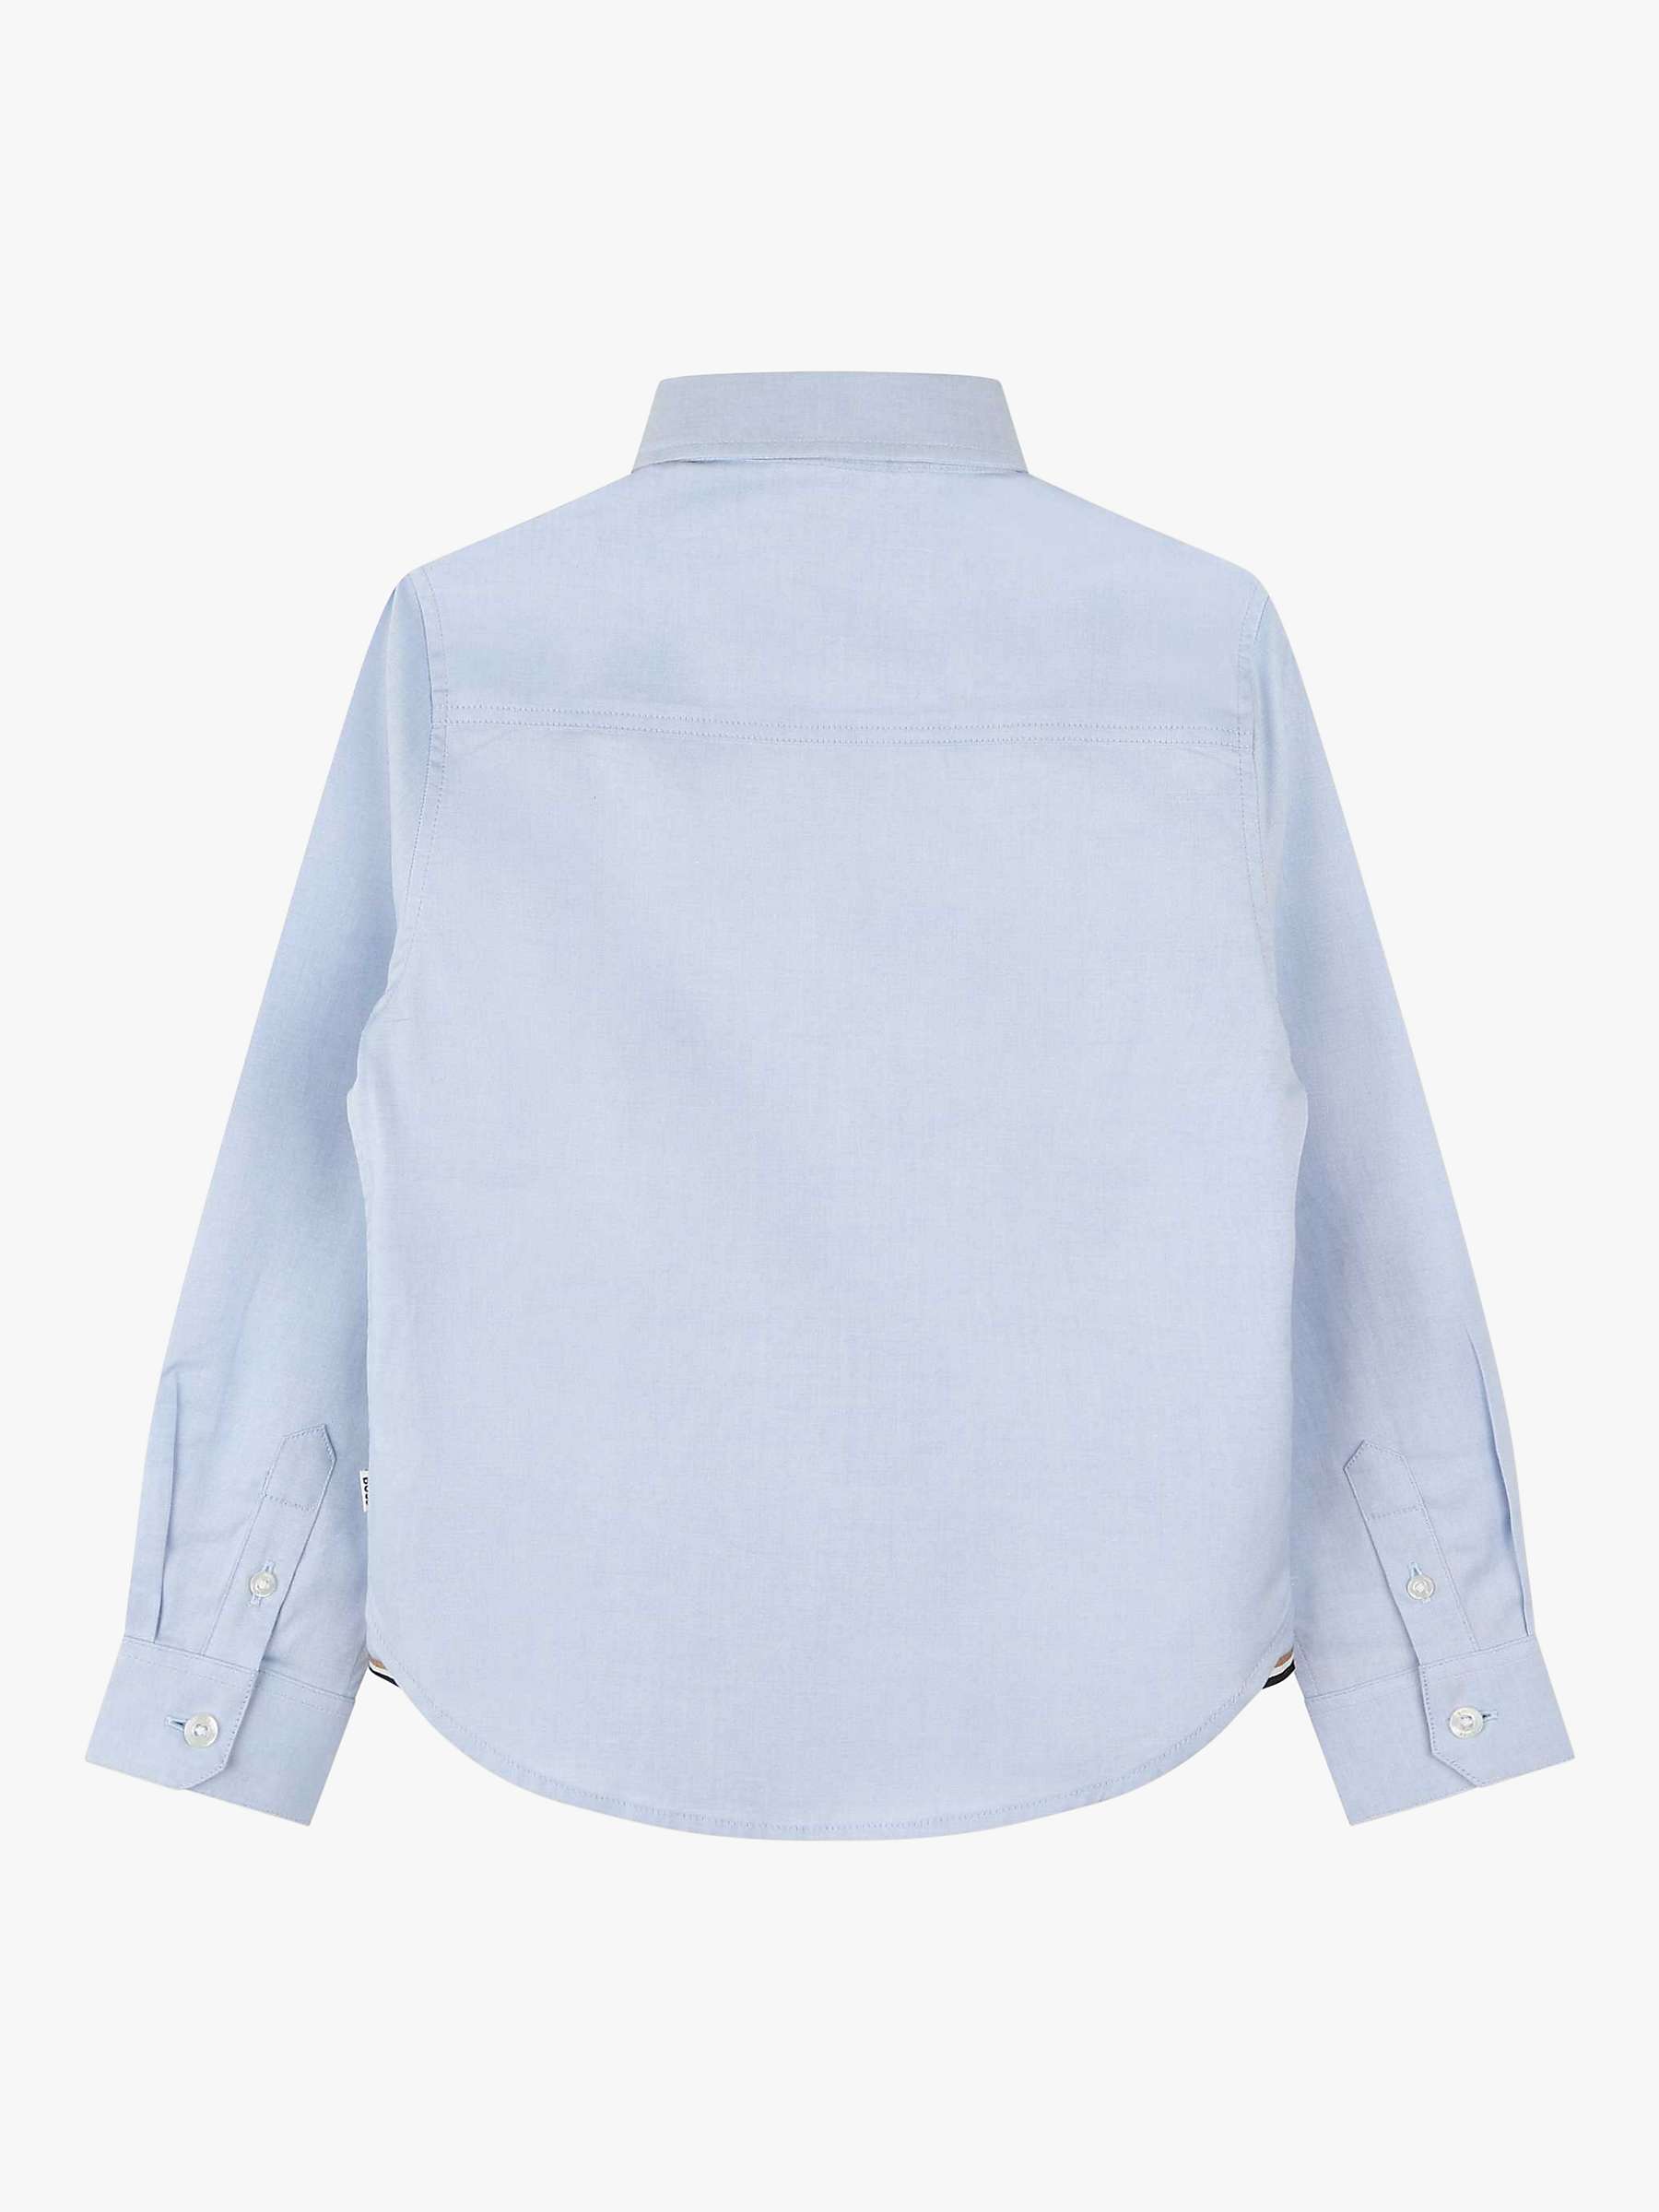 BOSS Kids' Oxford Long Sleeve Shirt, Light Blue at John Lewis & Partners